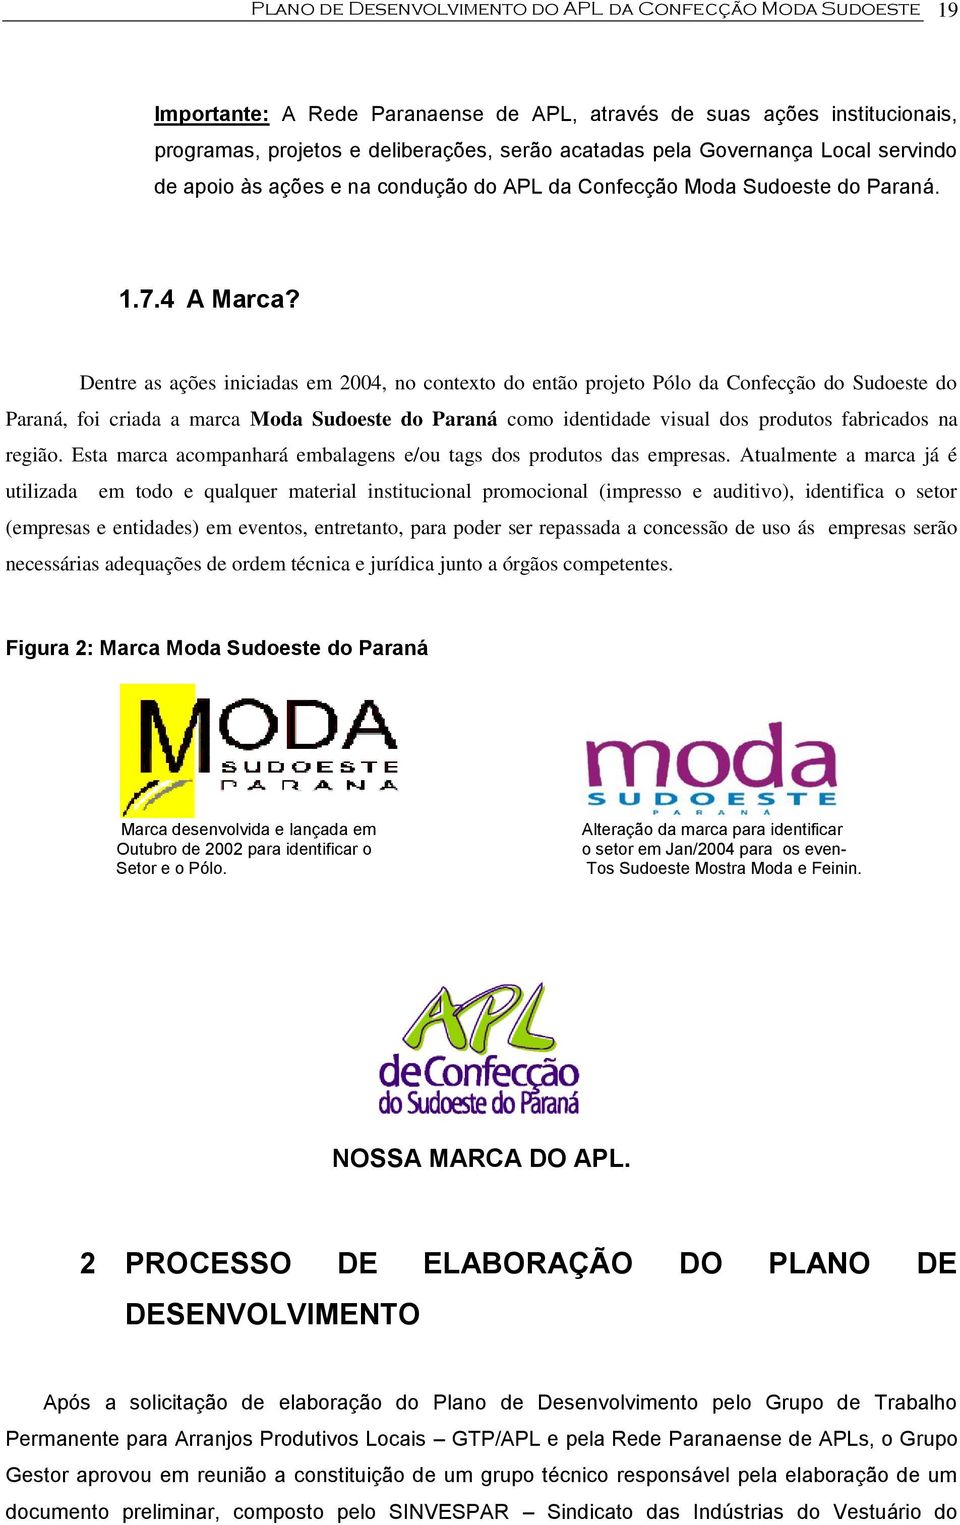 Dentre as ações iniciadas em 2004, no contexto do então projeto Pólo da Confecção do Sudoeste do Paraná, foi criada a marca Moda Sudoeste do Paraná como identidade visual dos produtos fabricados na